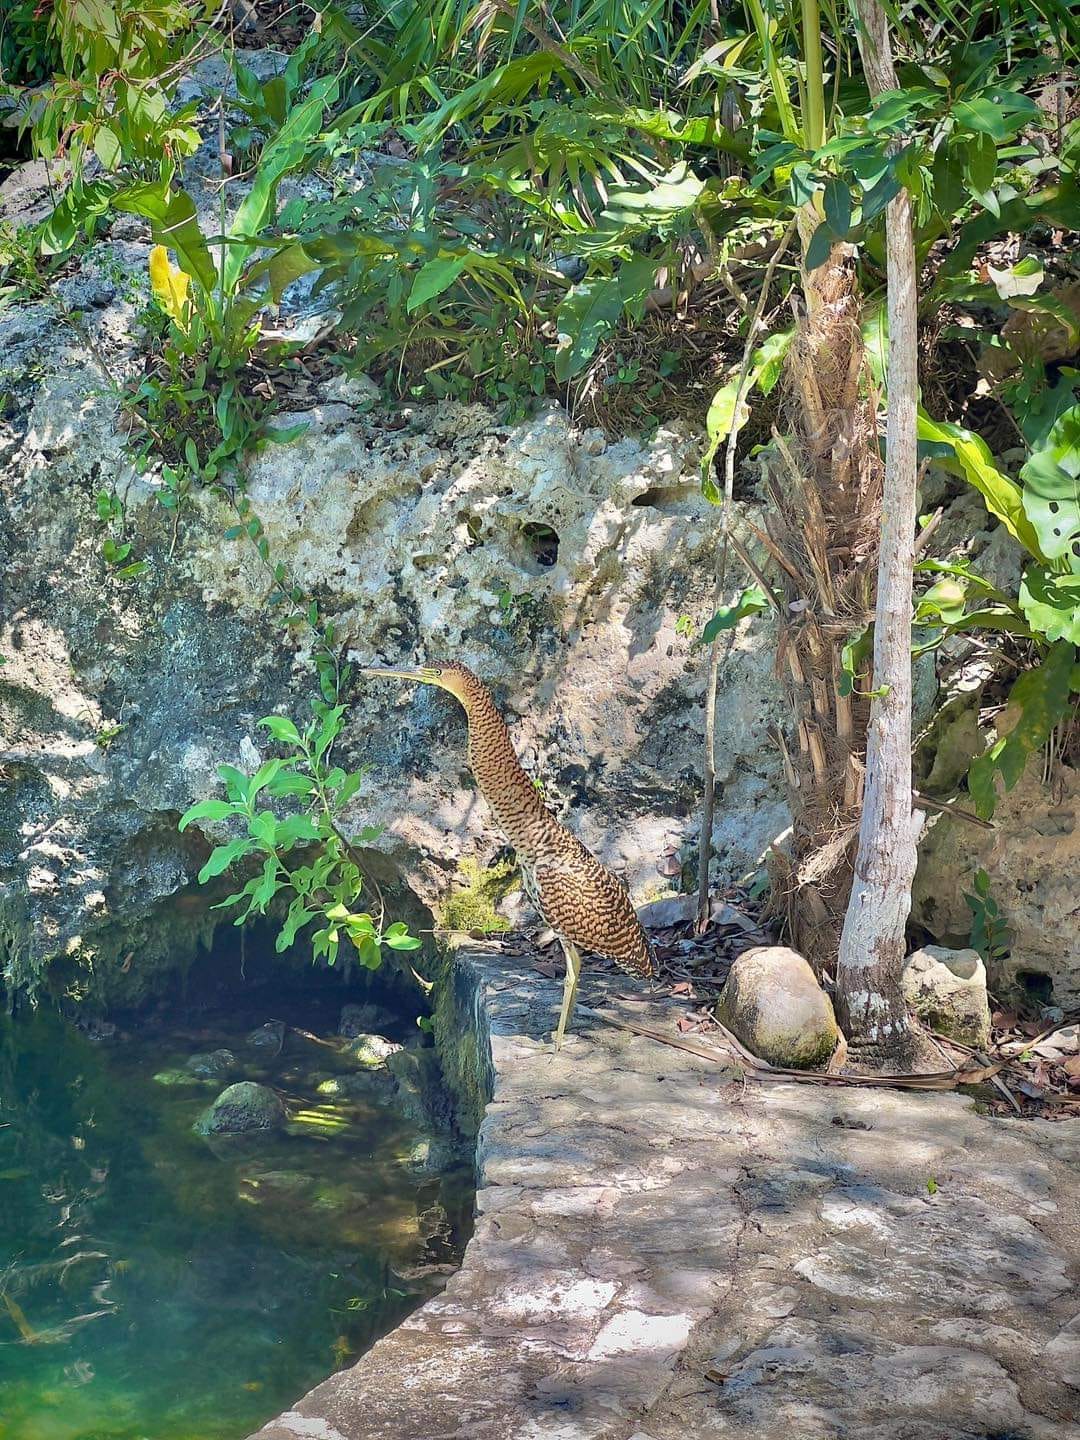 Una garza tigre, también conocida como Ho-Hob en lengua maya, hizo una inusual "visita" a un cenote en la hermosa Península de Yucatán